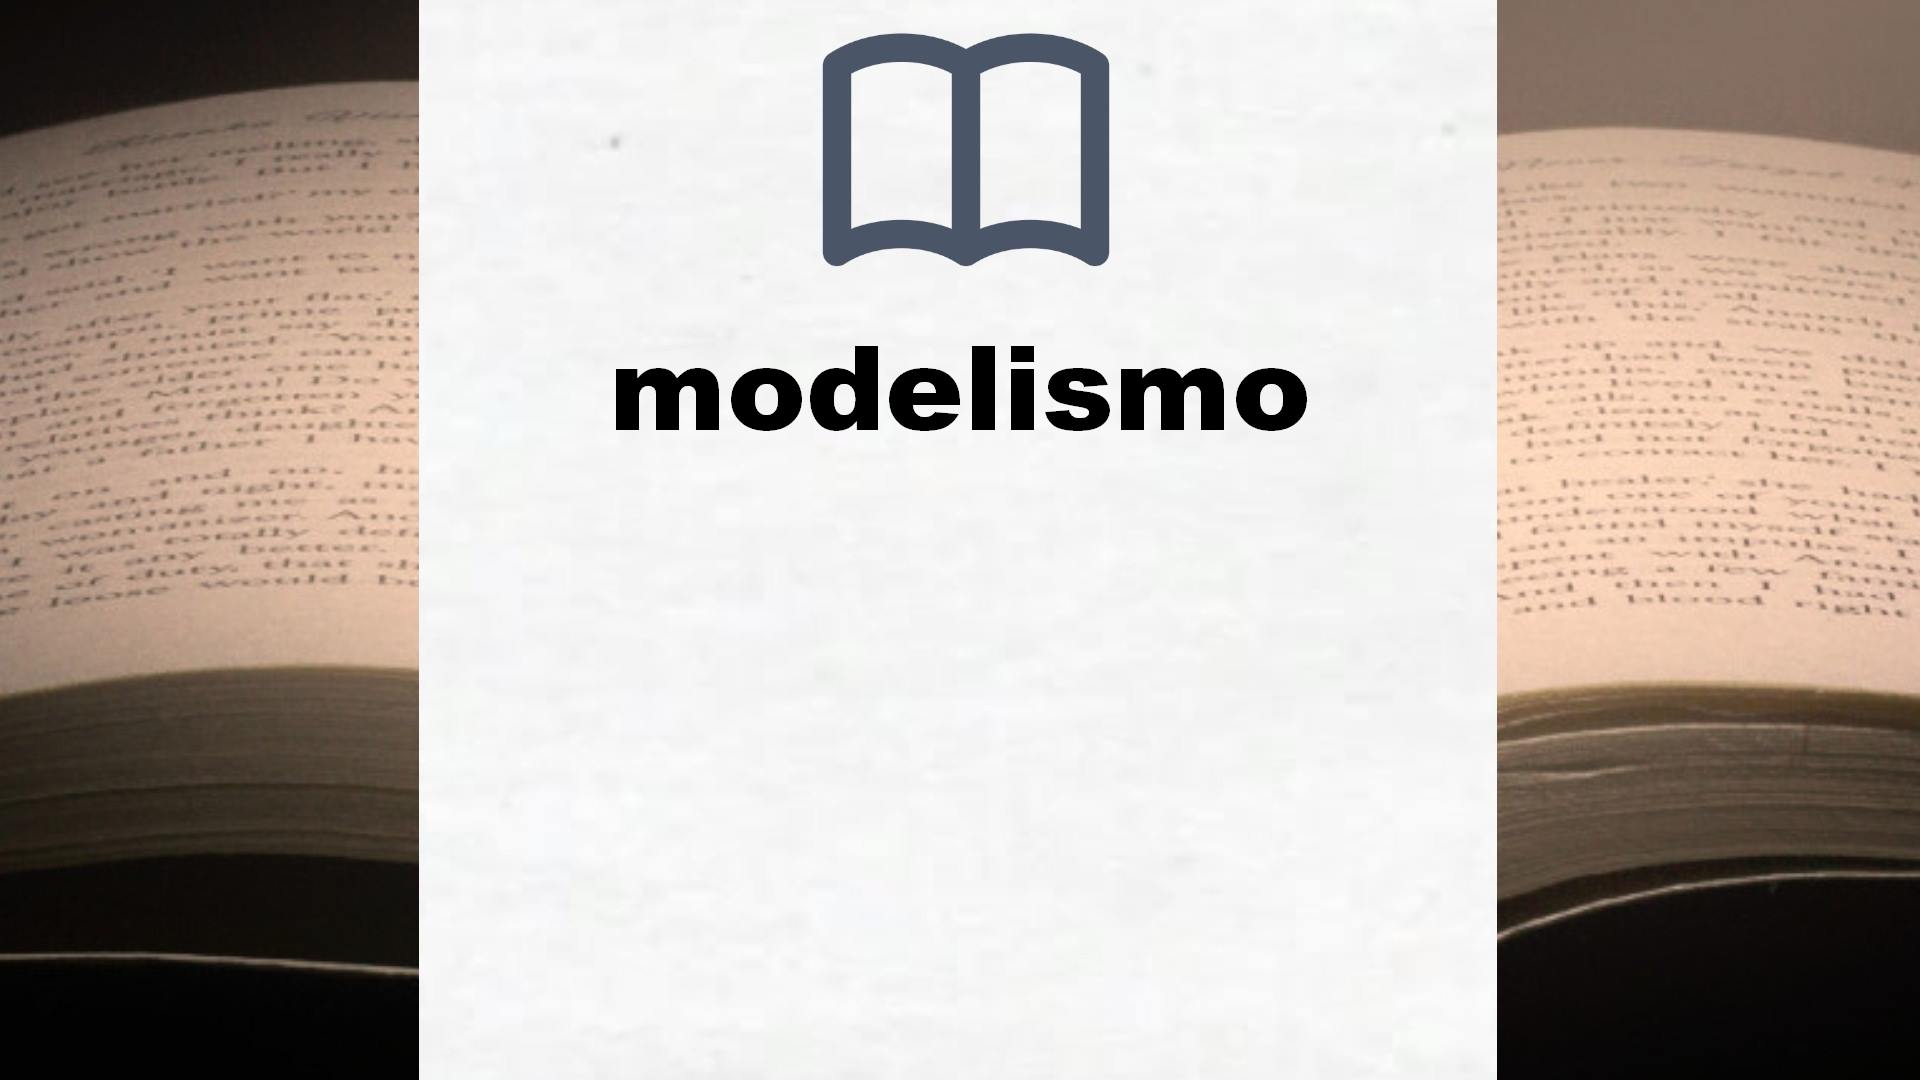 Libros sobre modelismo